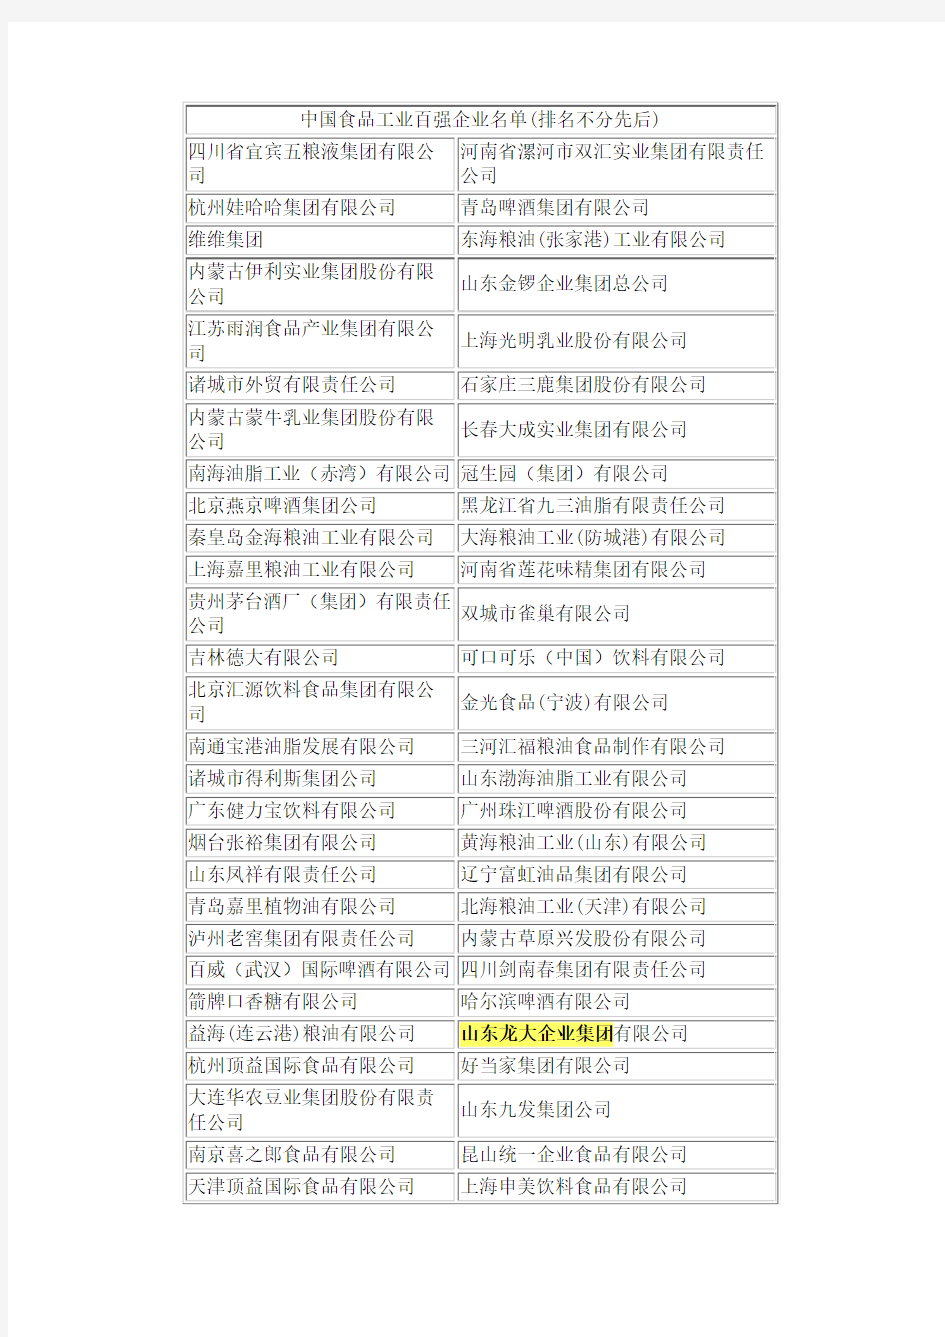 中国食品工业百强企业名单